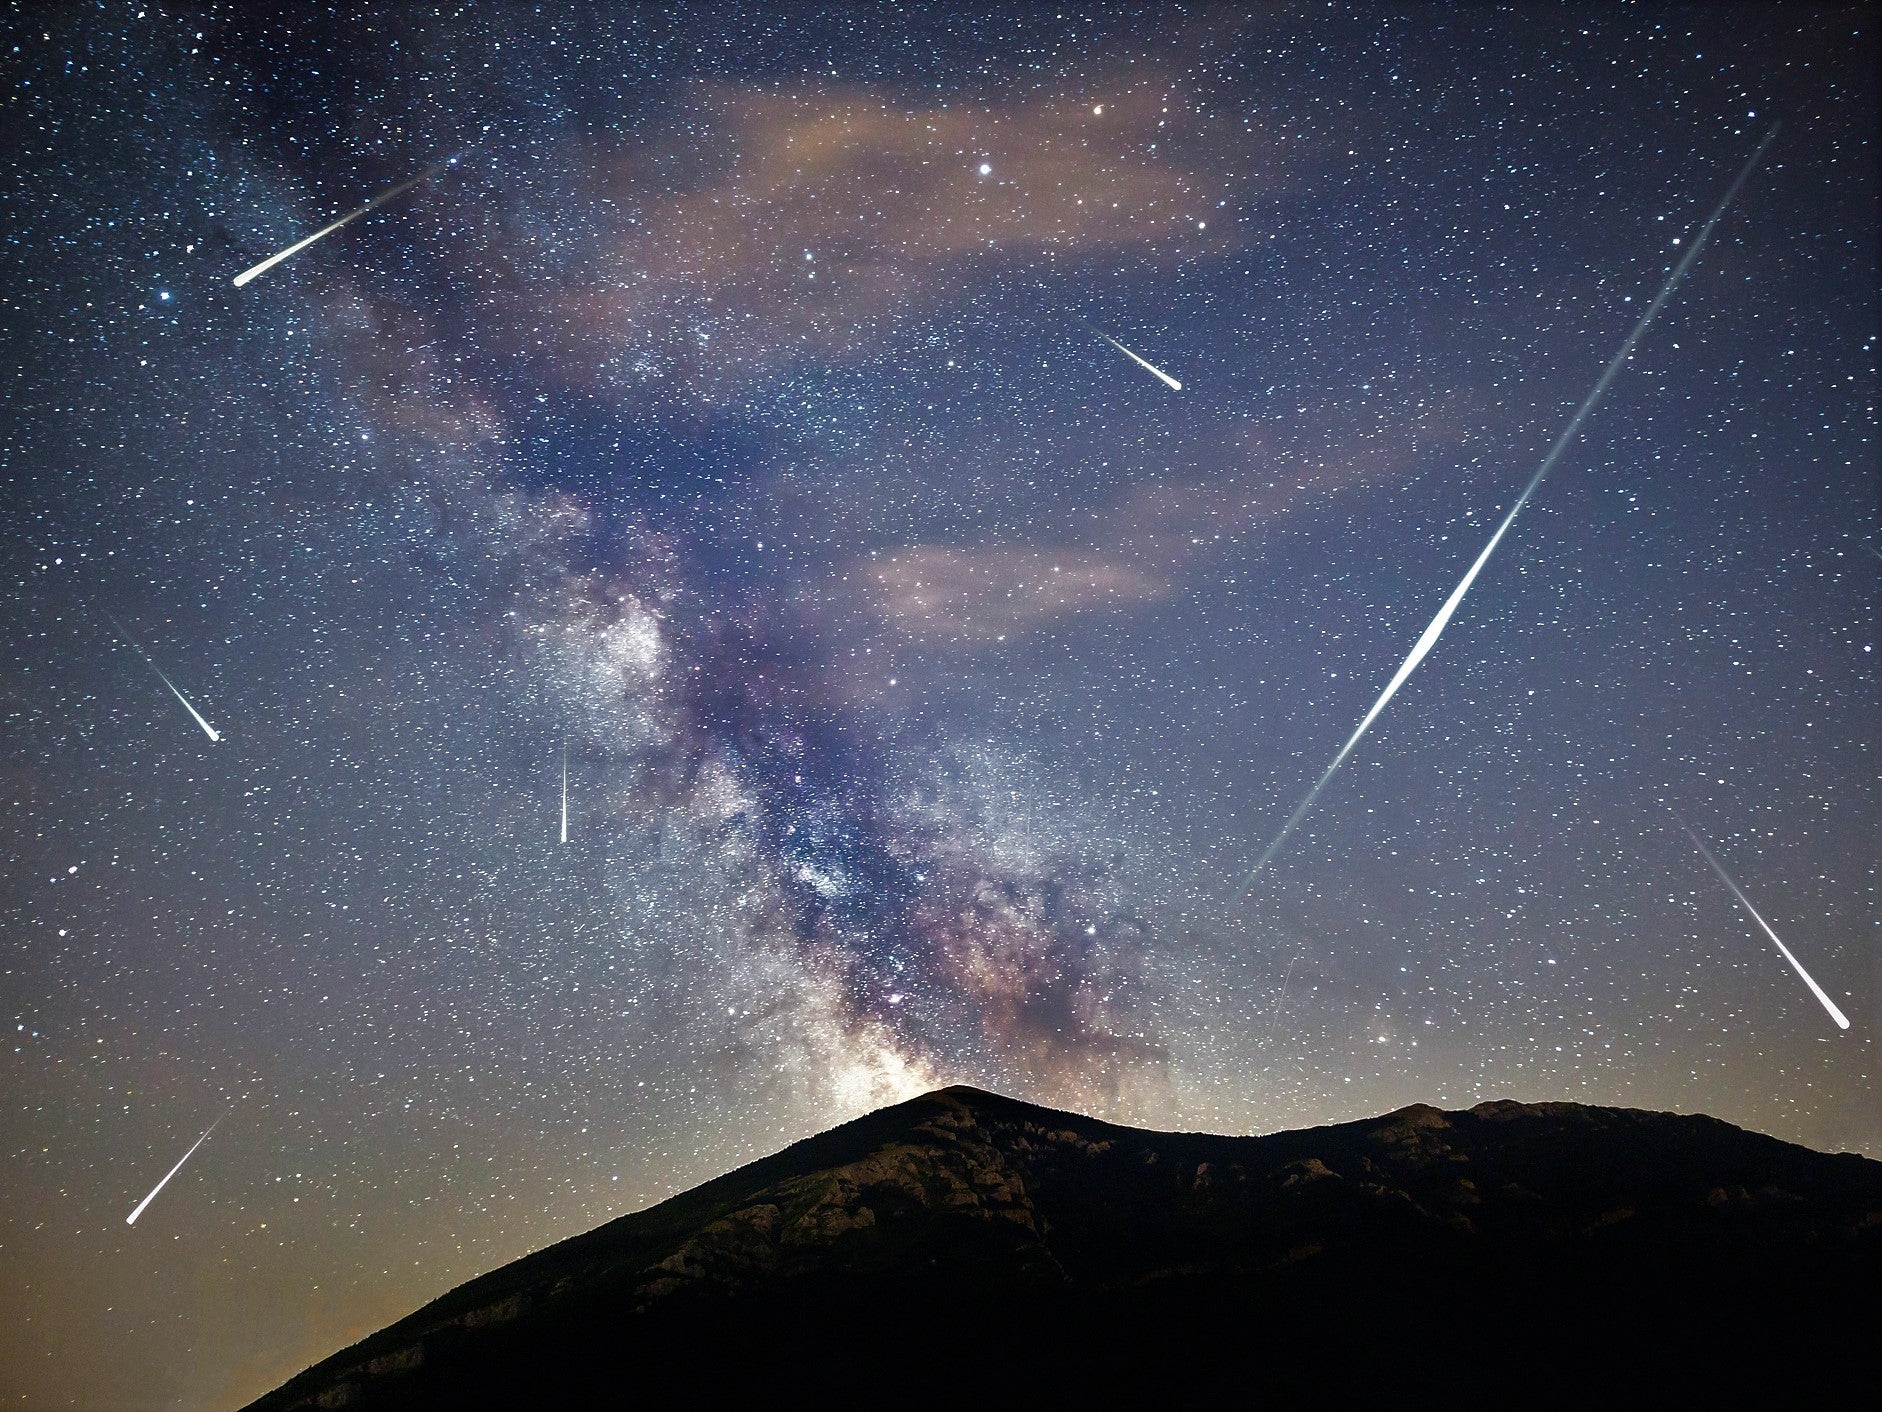 La lluvia de meteoros Gemínidas en 2020 verá a más de cien meteoros disparar a través del cielo en su punto máximo el 13 de diciembre.